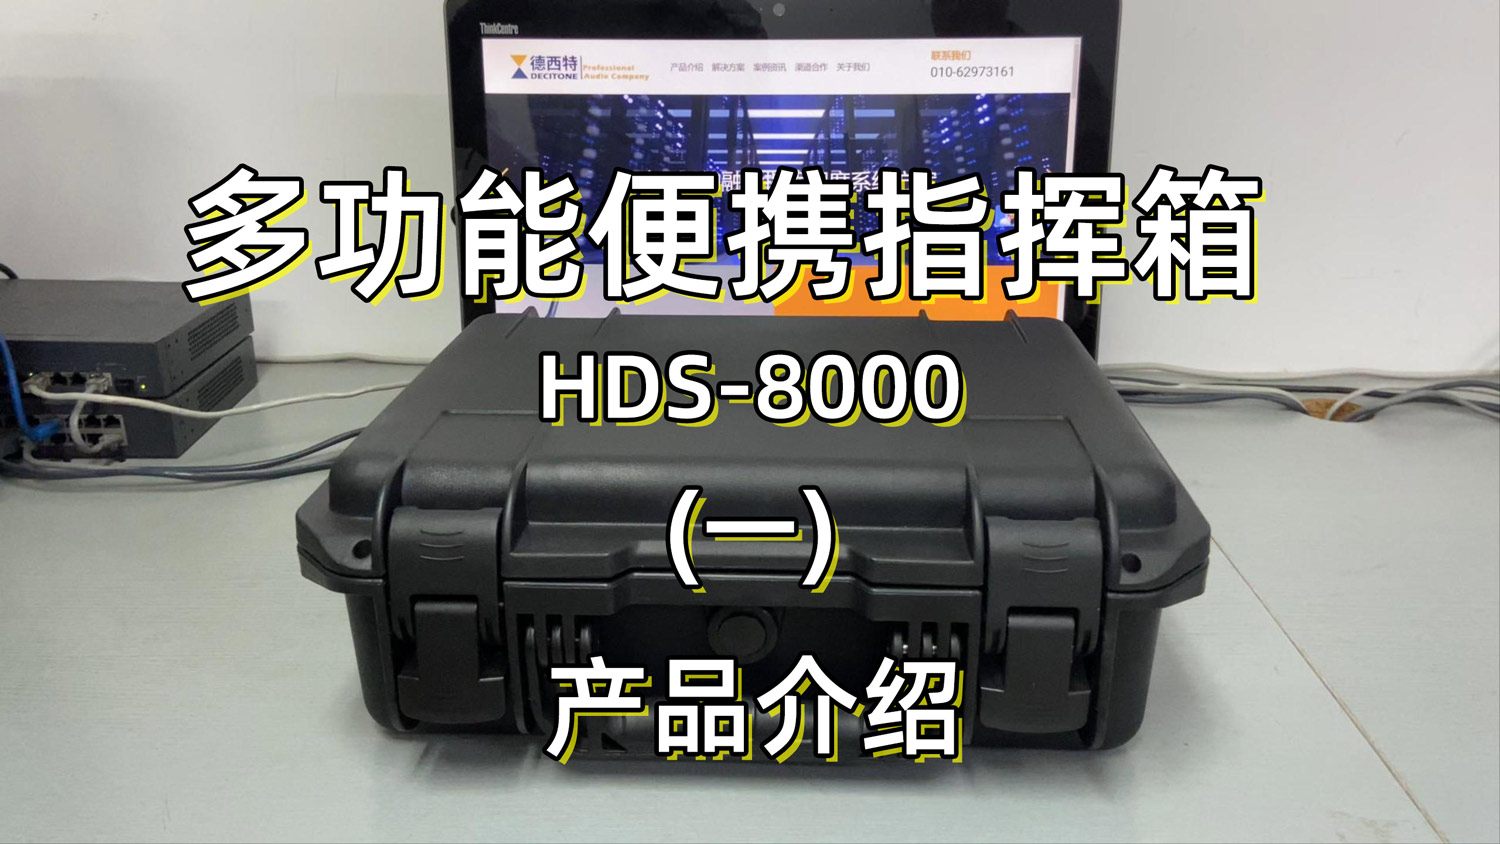 语音综合调度台|便携通讯指挥箱 HDS8000 产品介绍